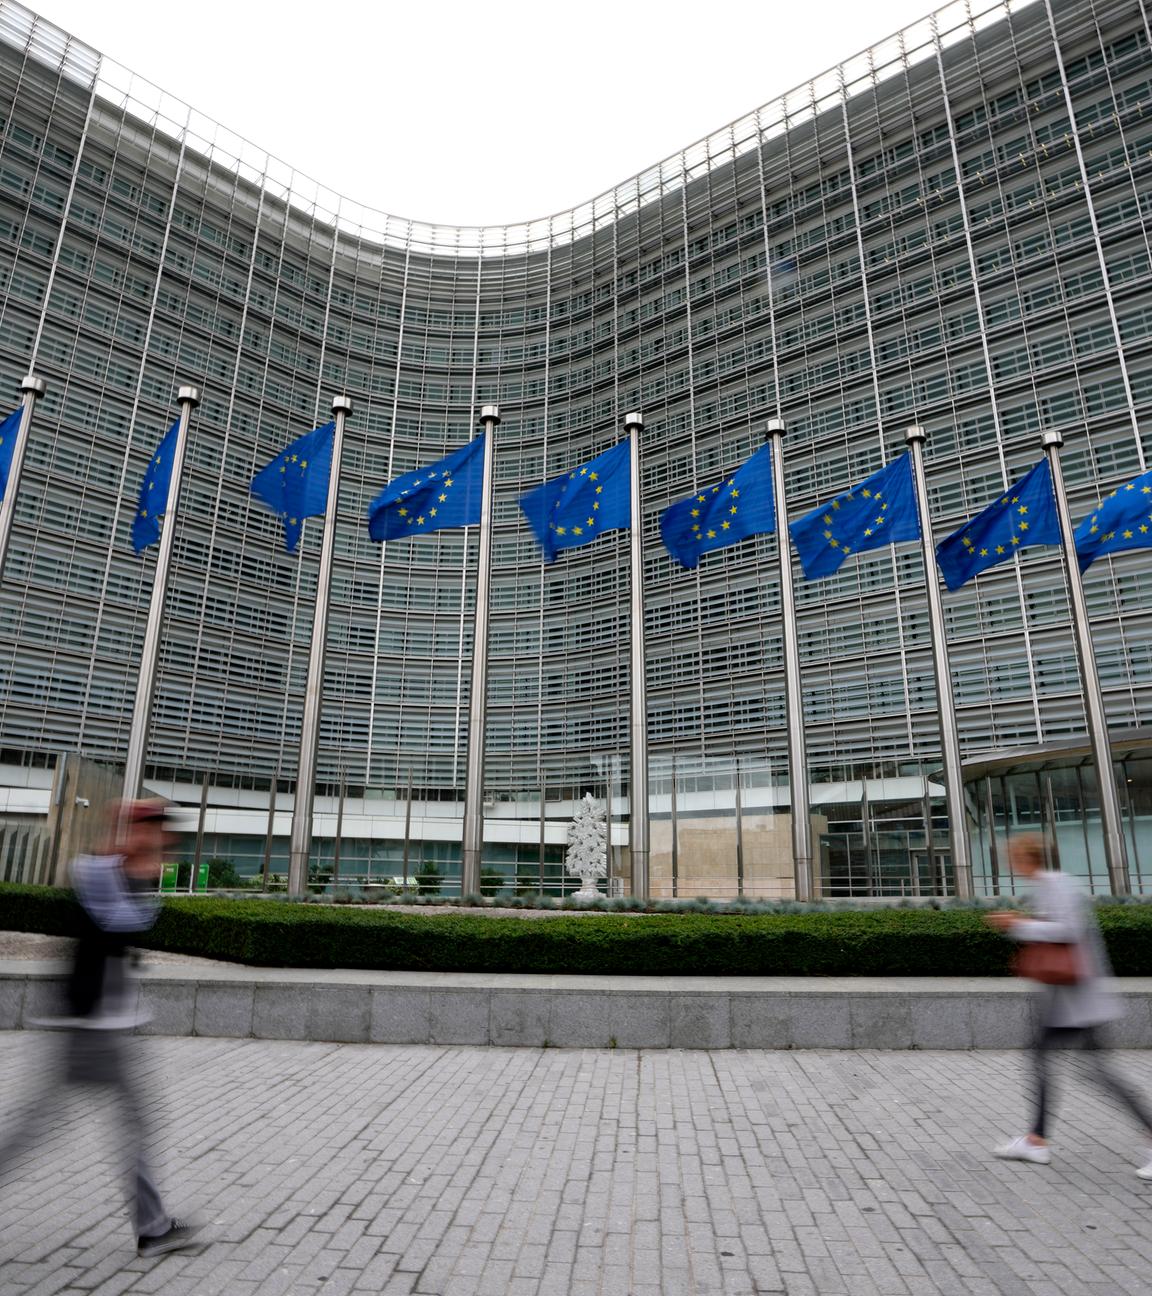 EU-Fahnen flattern im Wind, während Fußgänger am EU-Hauptsitz vorbeigehen. 